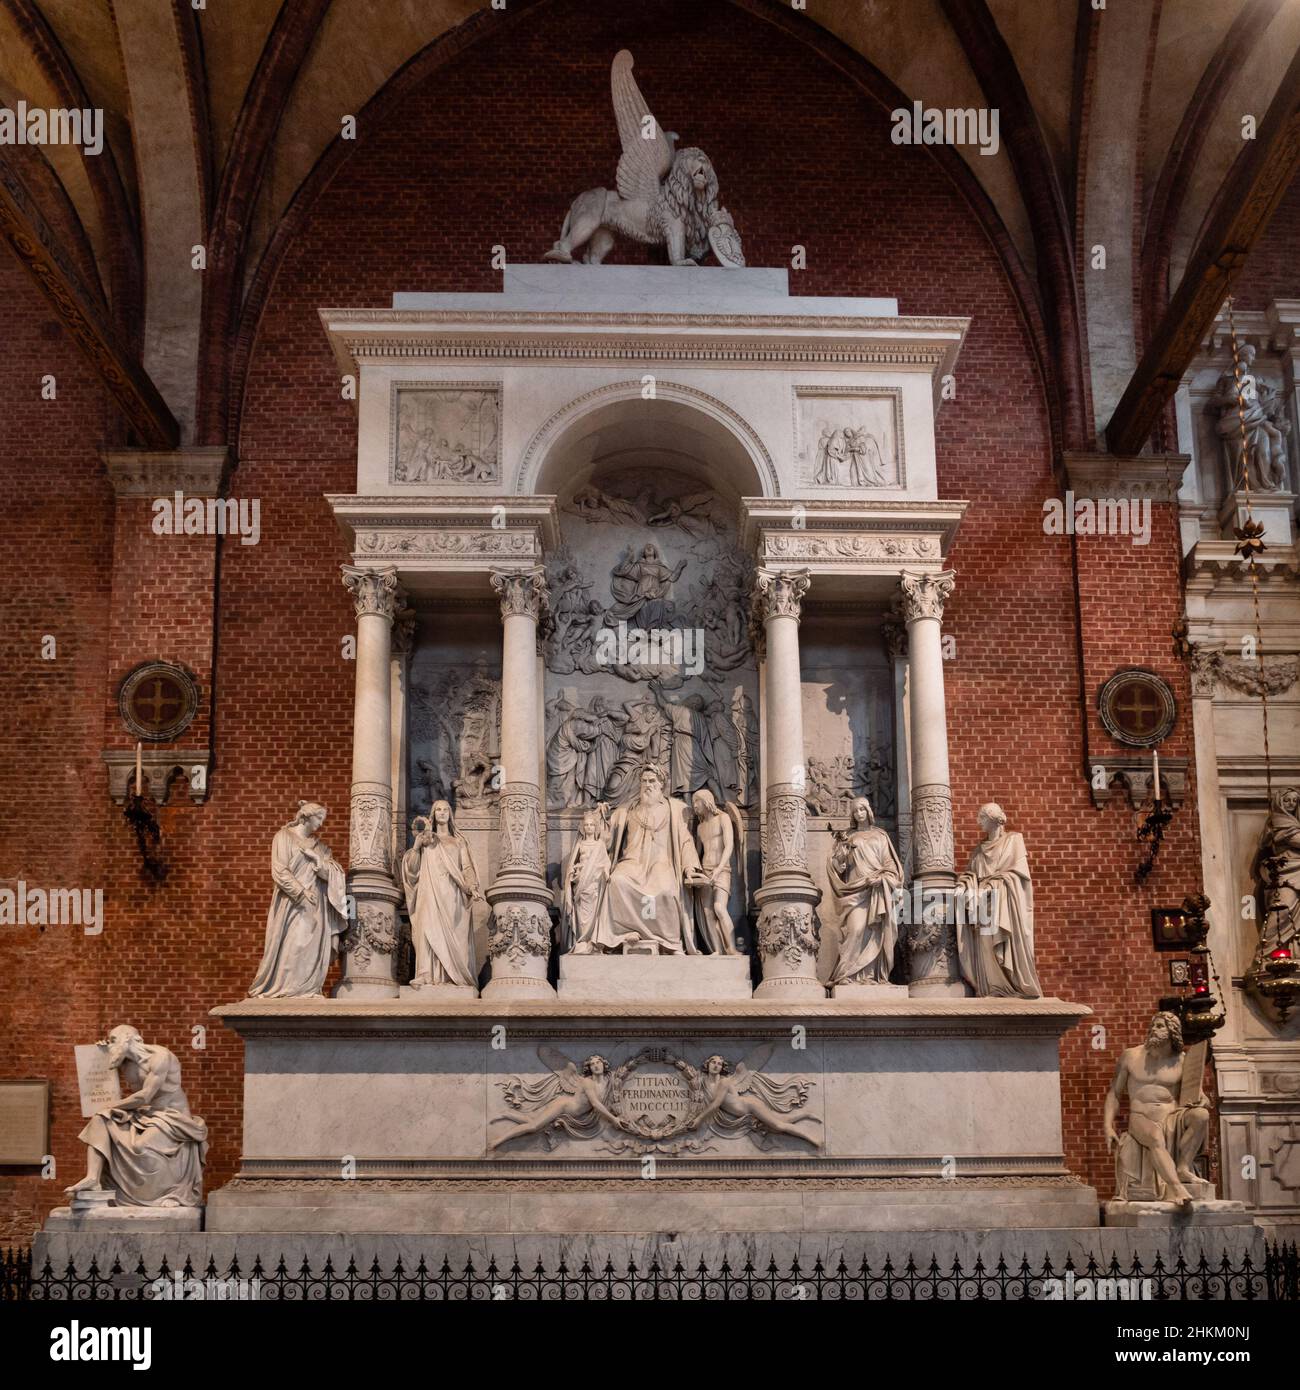 Venise, Italie - janvier 4 2022 : monument ou mausolée dédié à Titien, dans l'église Santa Maria Gloriosa dei Frari. Banque D'Images